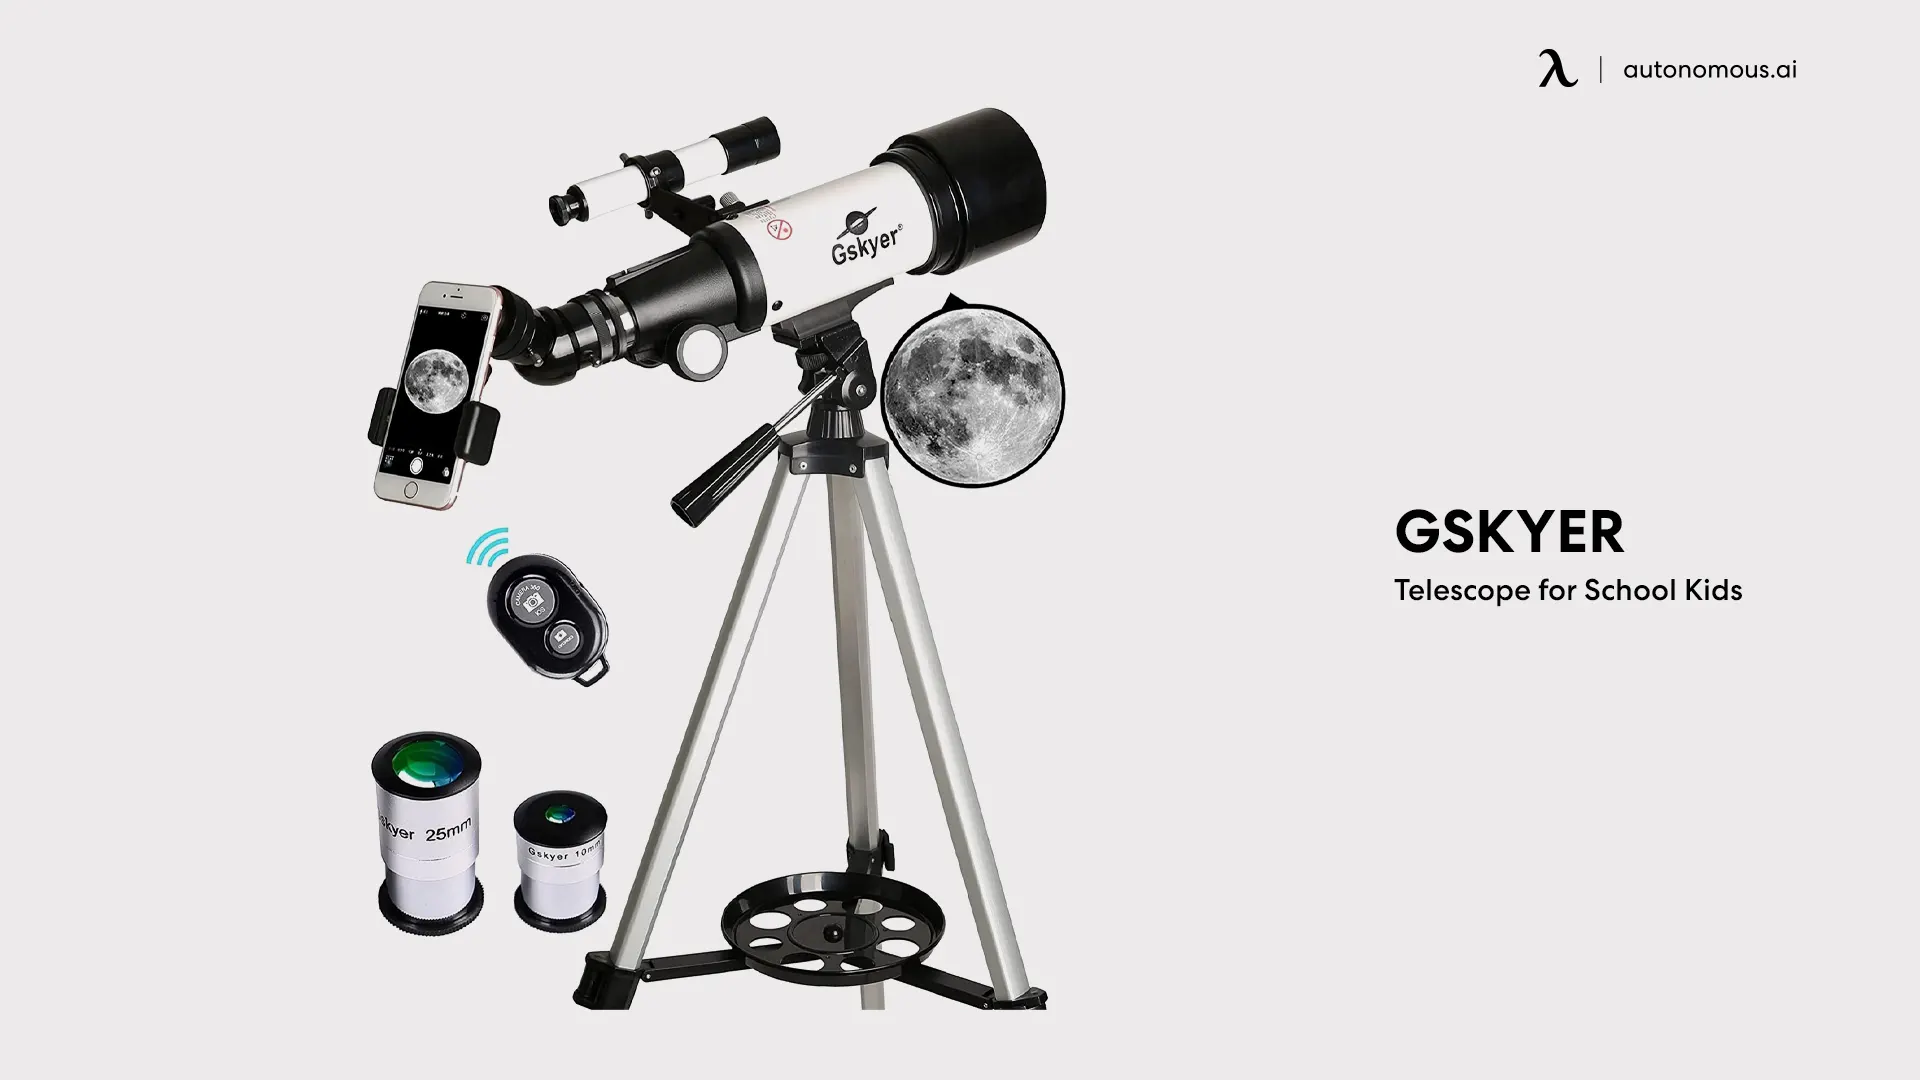 Gskyer Telescope for School Kids - Christmas gift for classroom